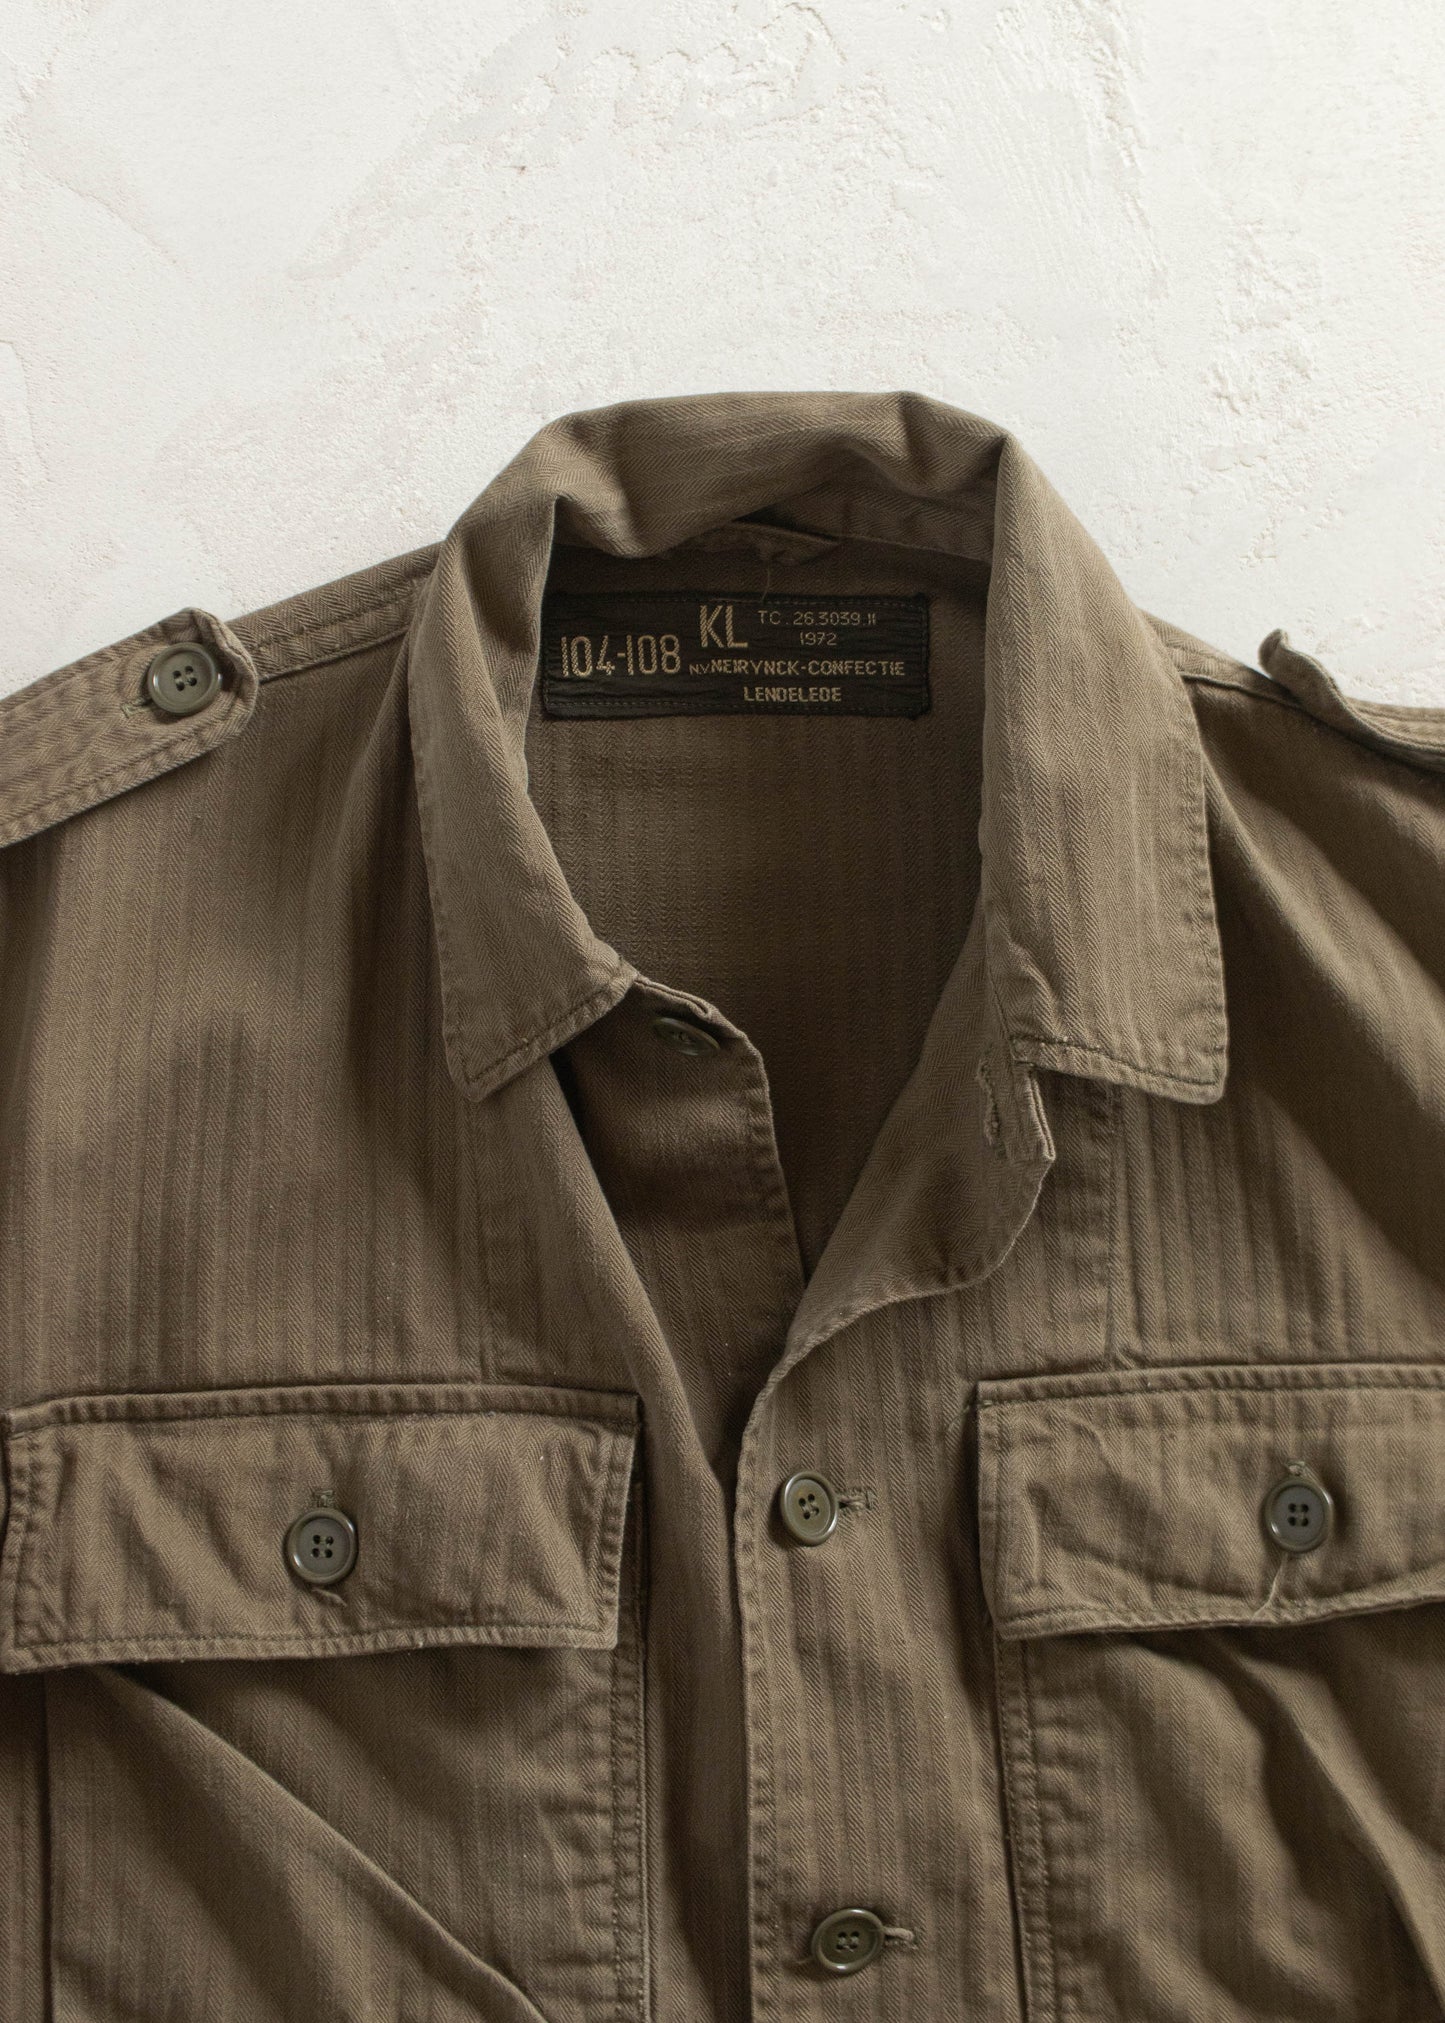 Vintage 1970s Herringbone Twill Military Field Jacket Size M/L